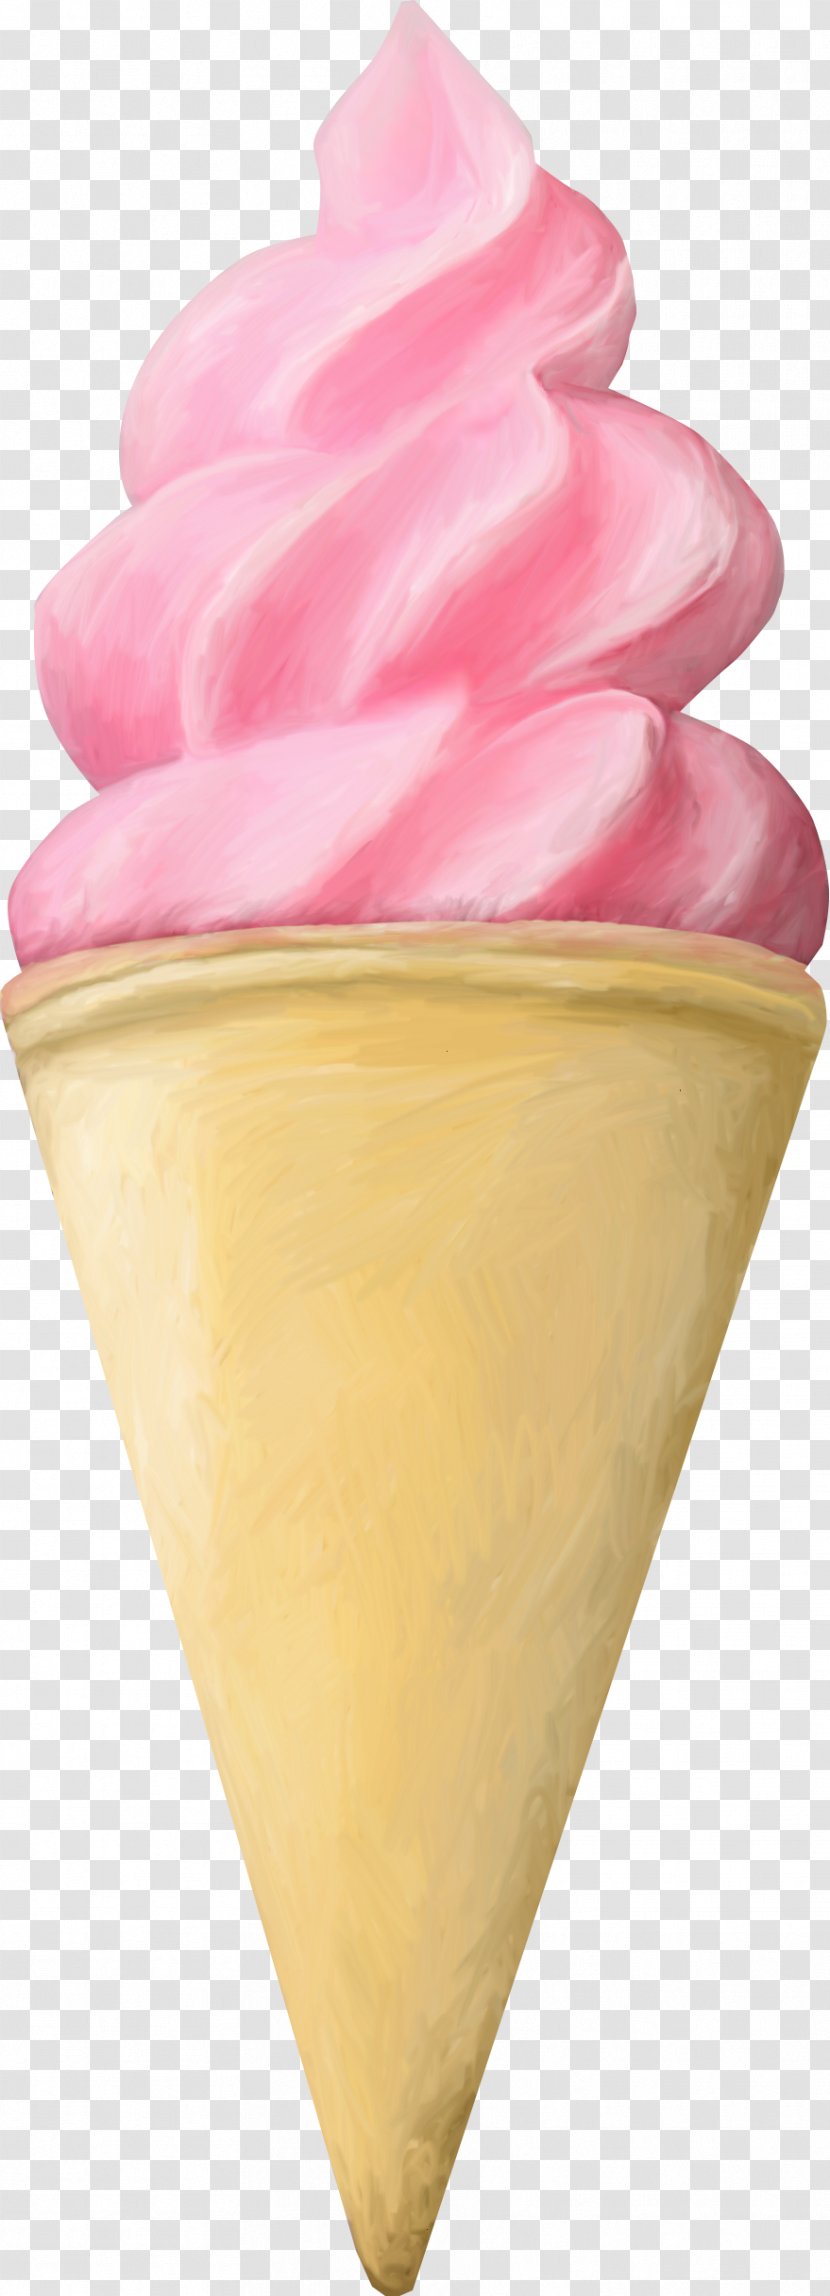 Ice Cream Cone Gelato Sundae Italian - Cones Transparent PNG